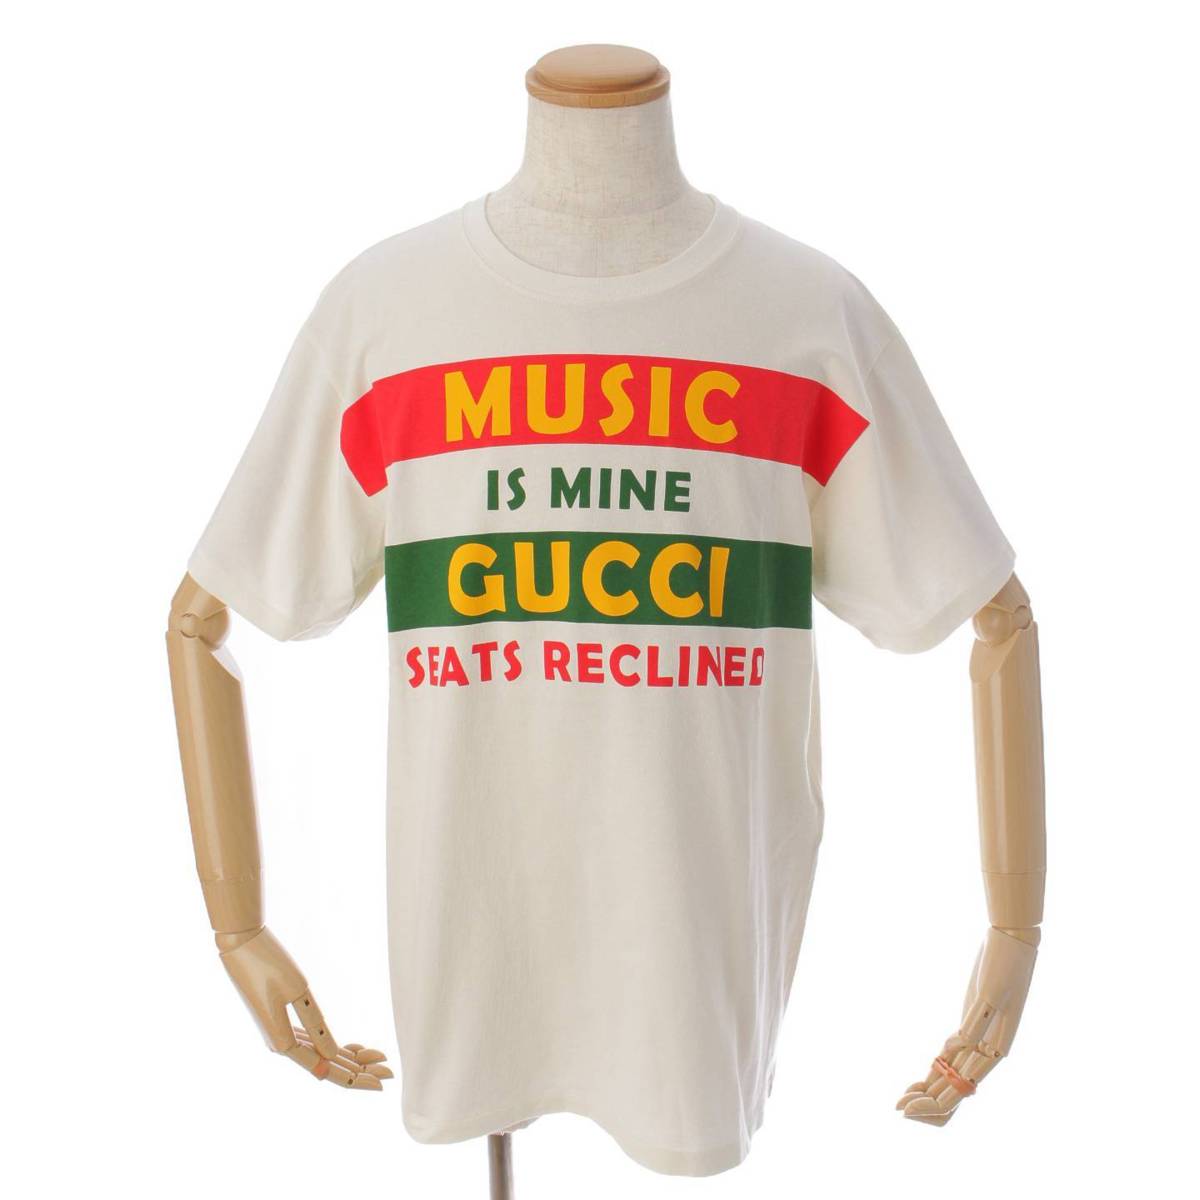 【先行SALE】グッチ(Gucci) 100周年 MUSIC IS MINE プリント Tシャツ トップス 615044 ホワイト M